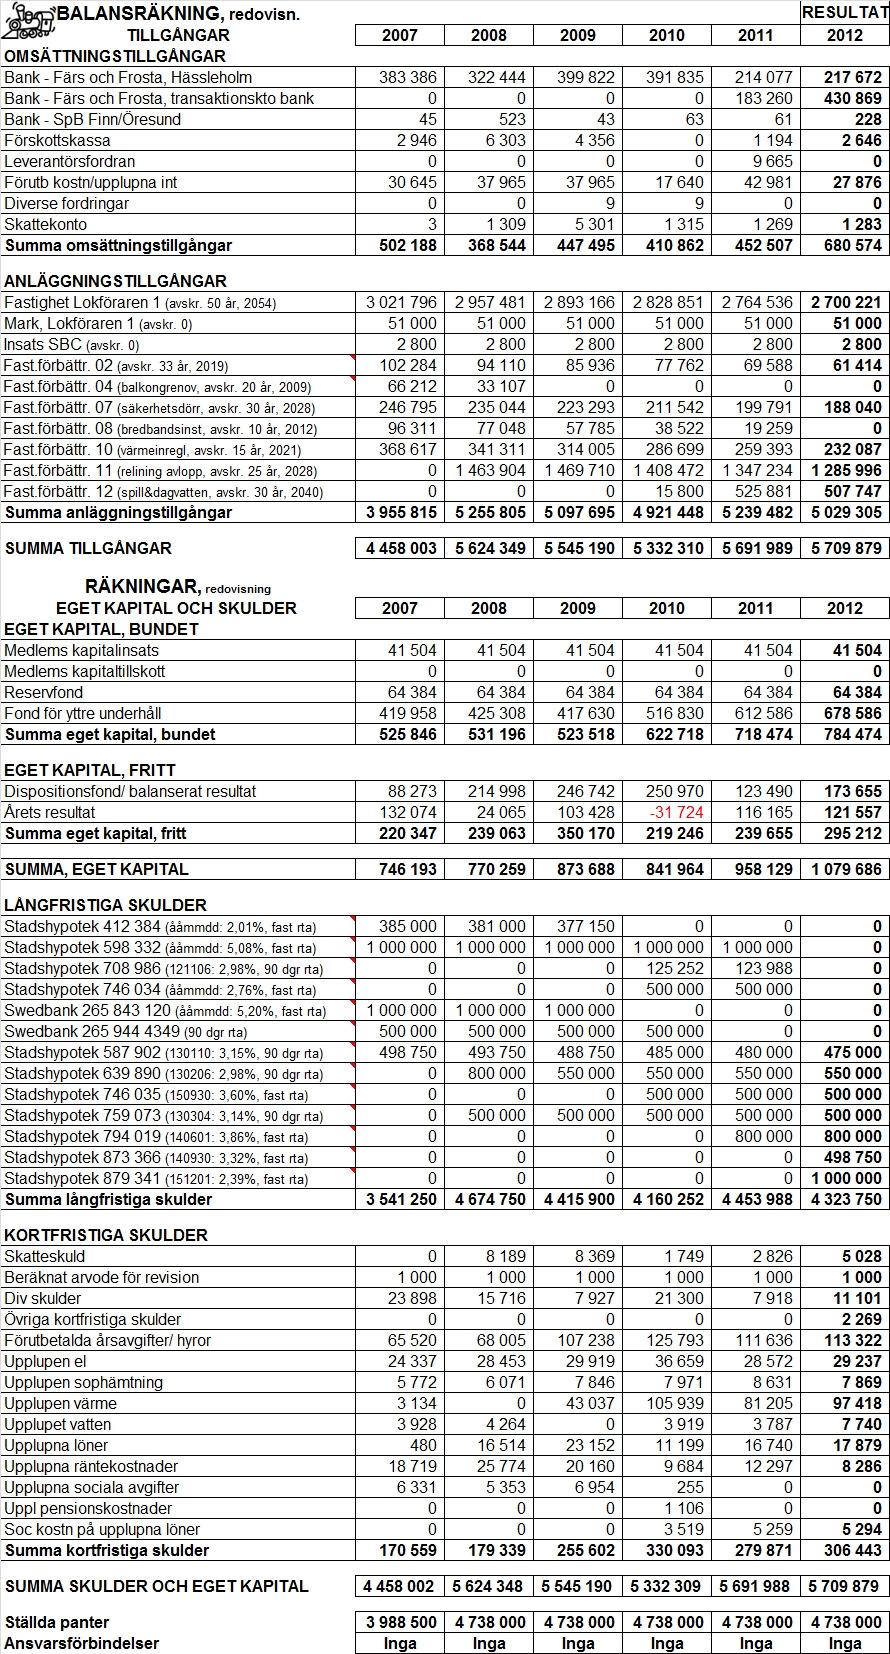 Budget 2013, fastställd av styrelsen 2012-11-27. Resultat 2012, fastställd av styrelsen 2013-04-15.